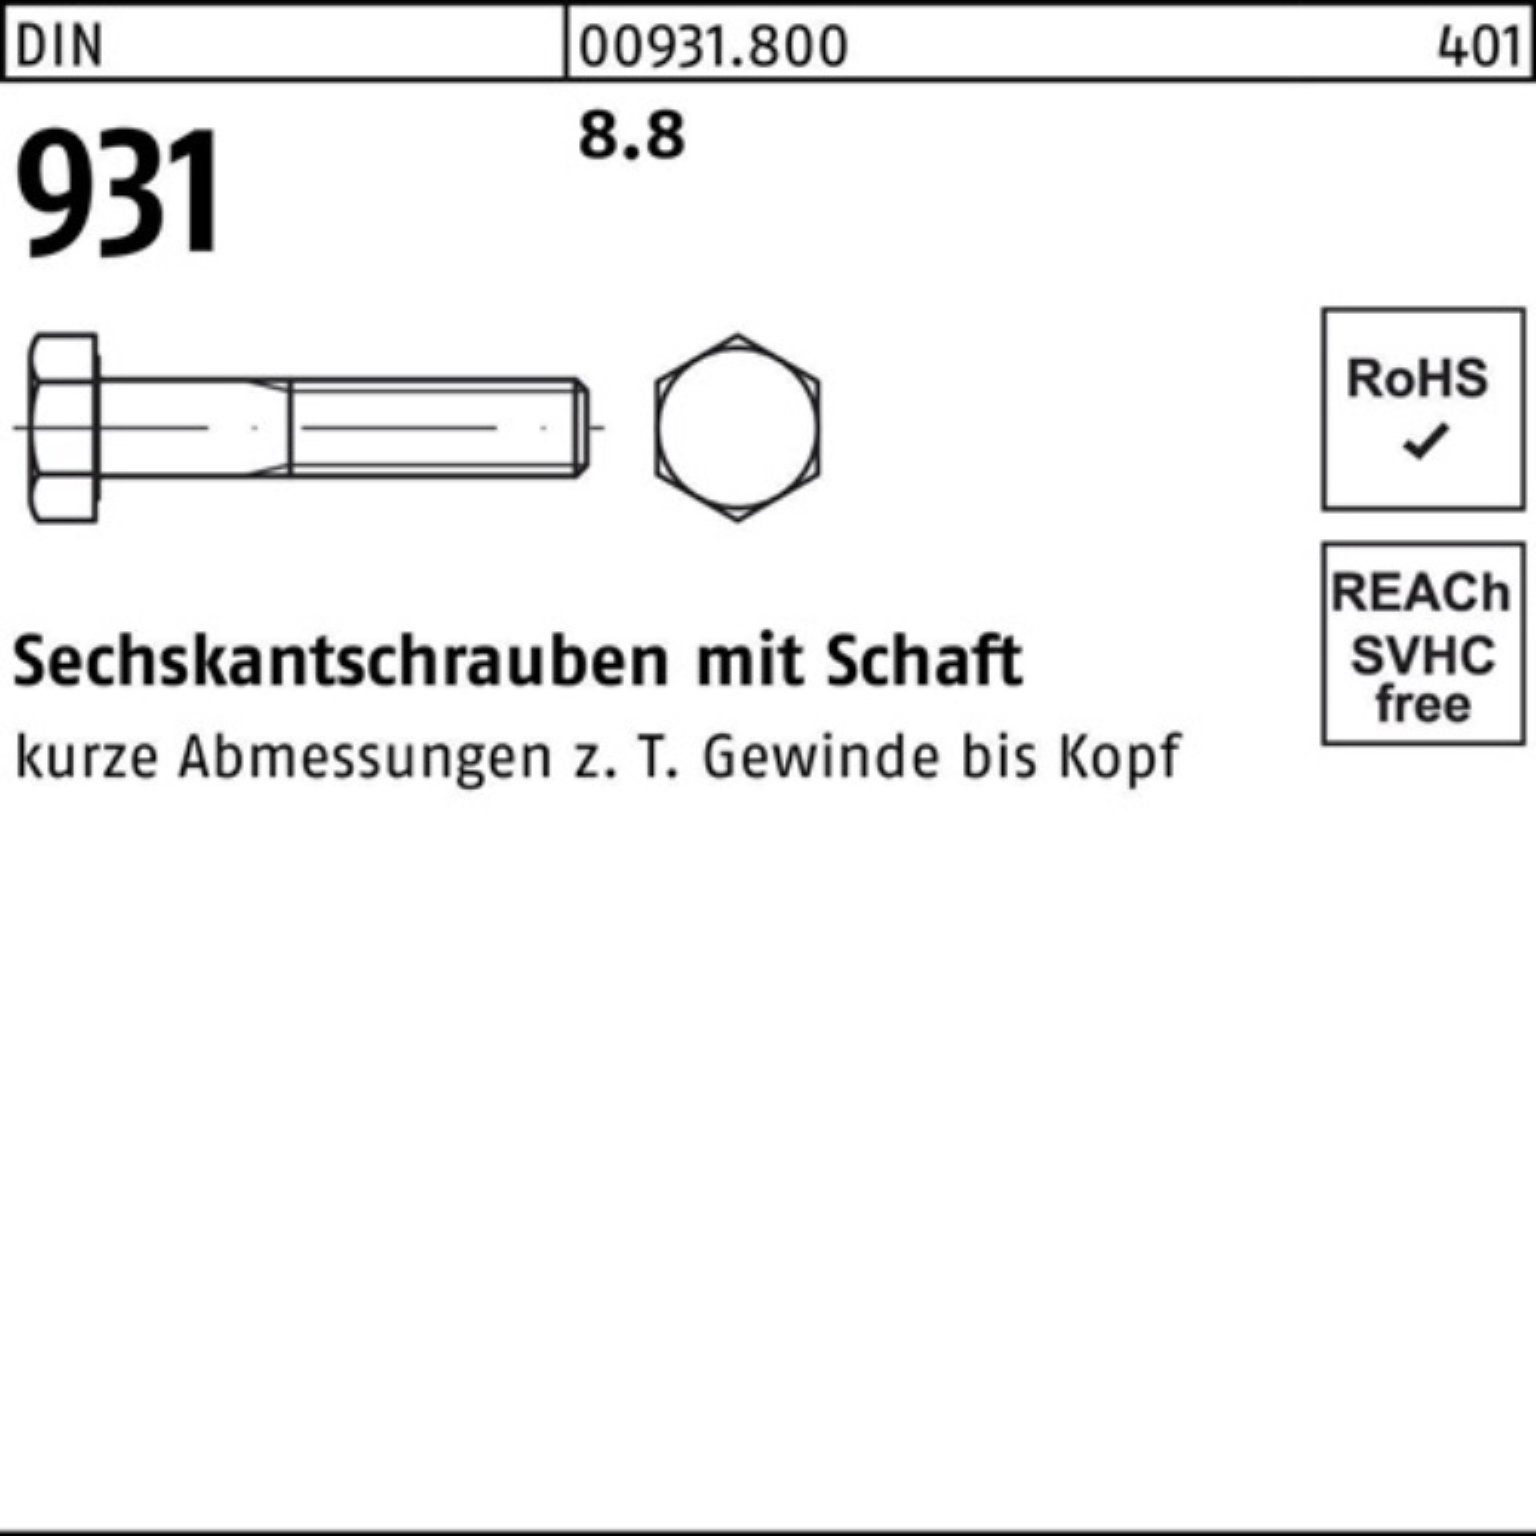 Reyher Sechskantschraube 100er M14x 25 Schaft 931 Pack DIN 270 DIN Sechskantschraube 8.8 Stück